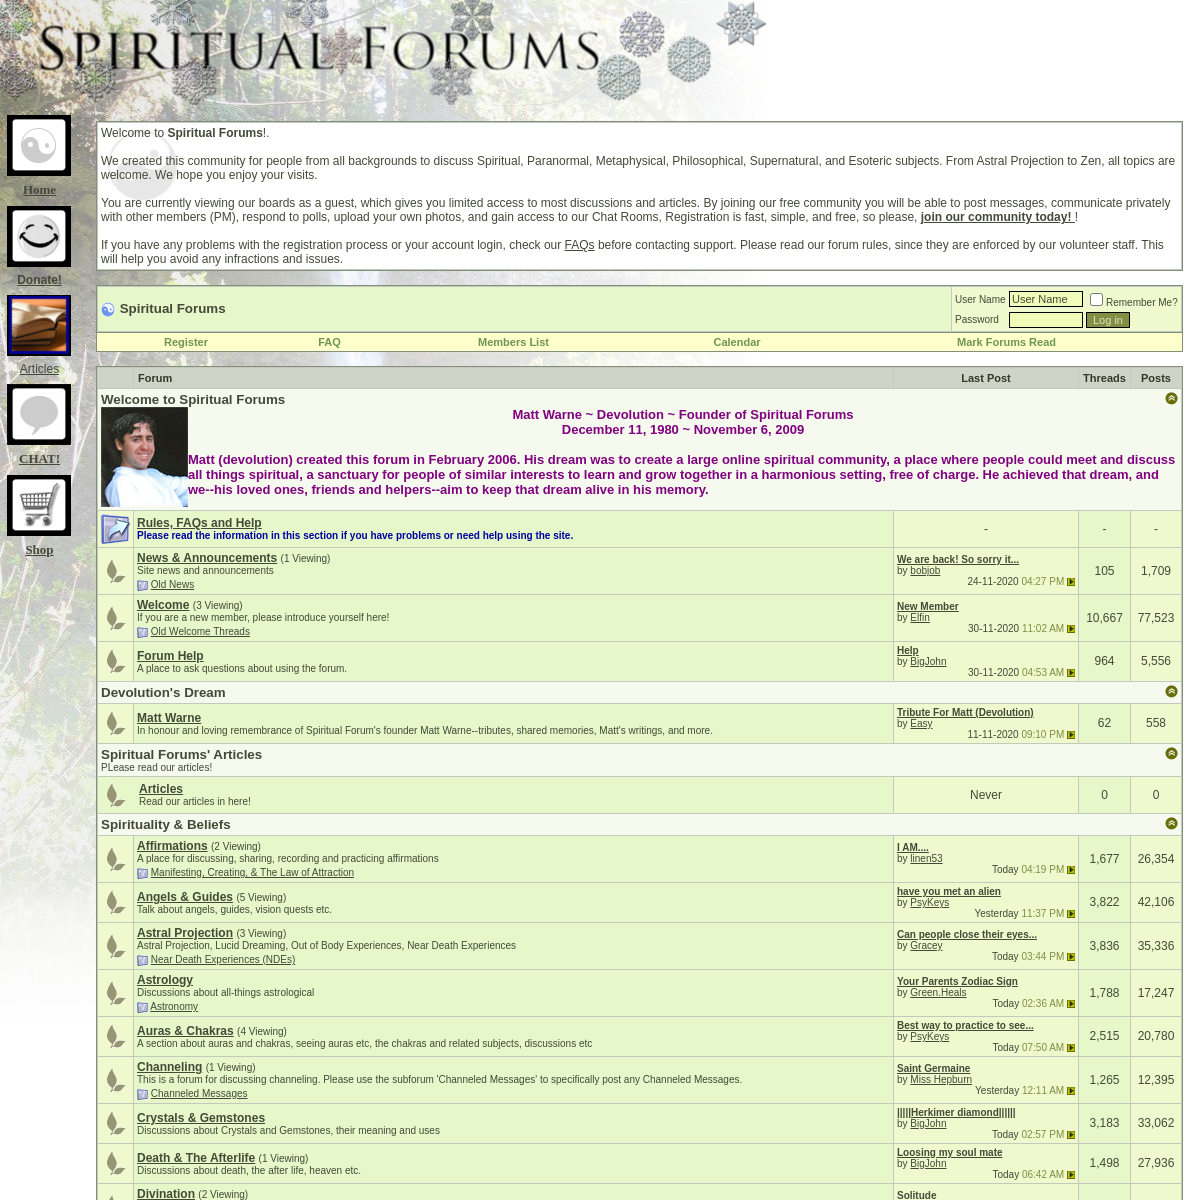 A complete backup of spiritualforums.com